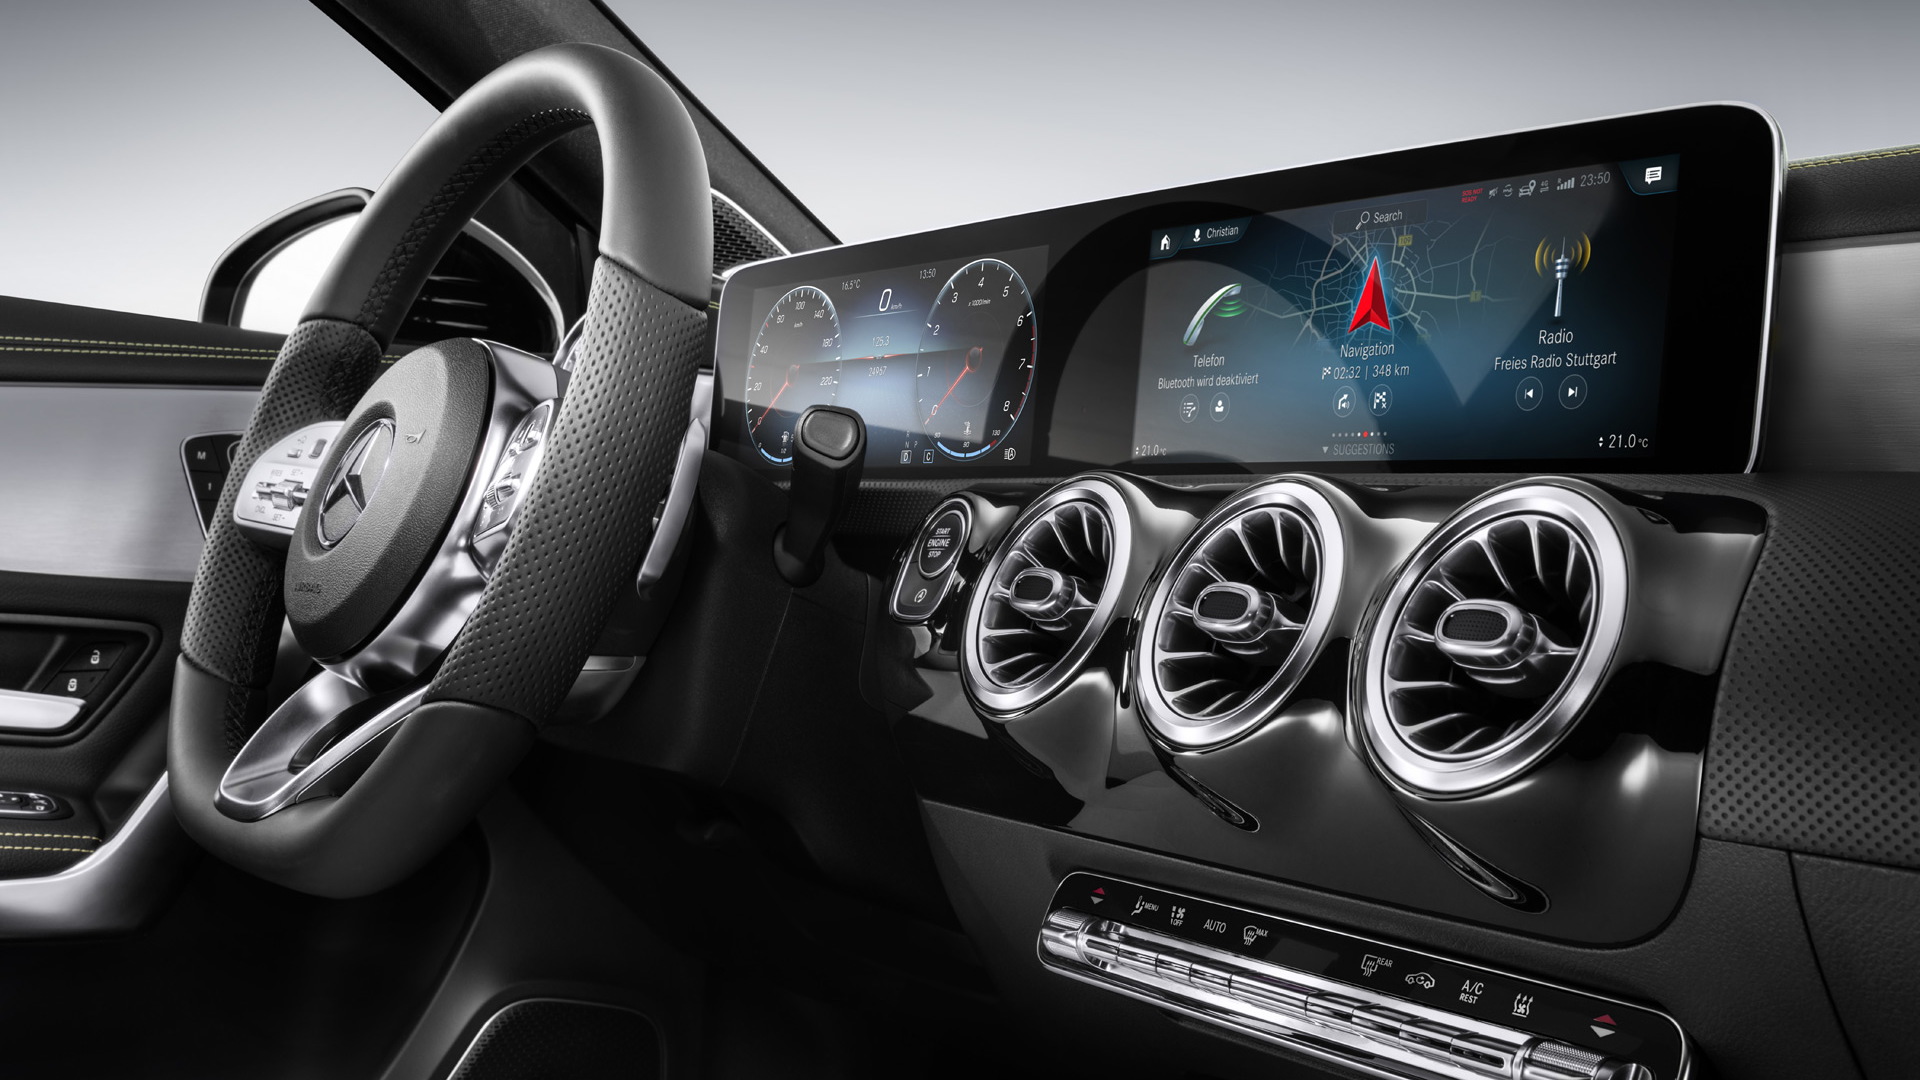 Mercedes-Benz MBUX user interface